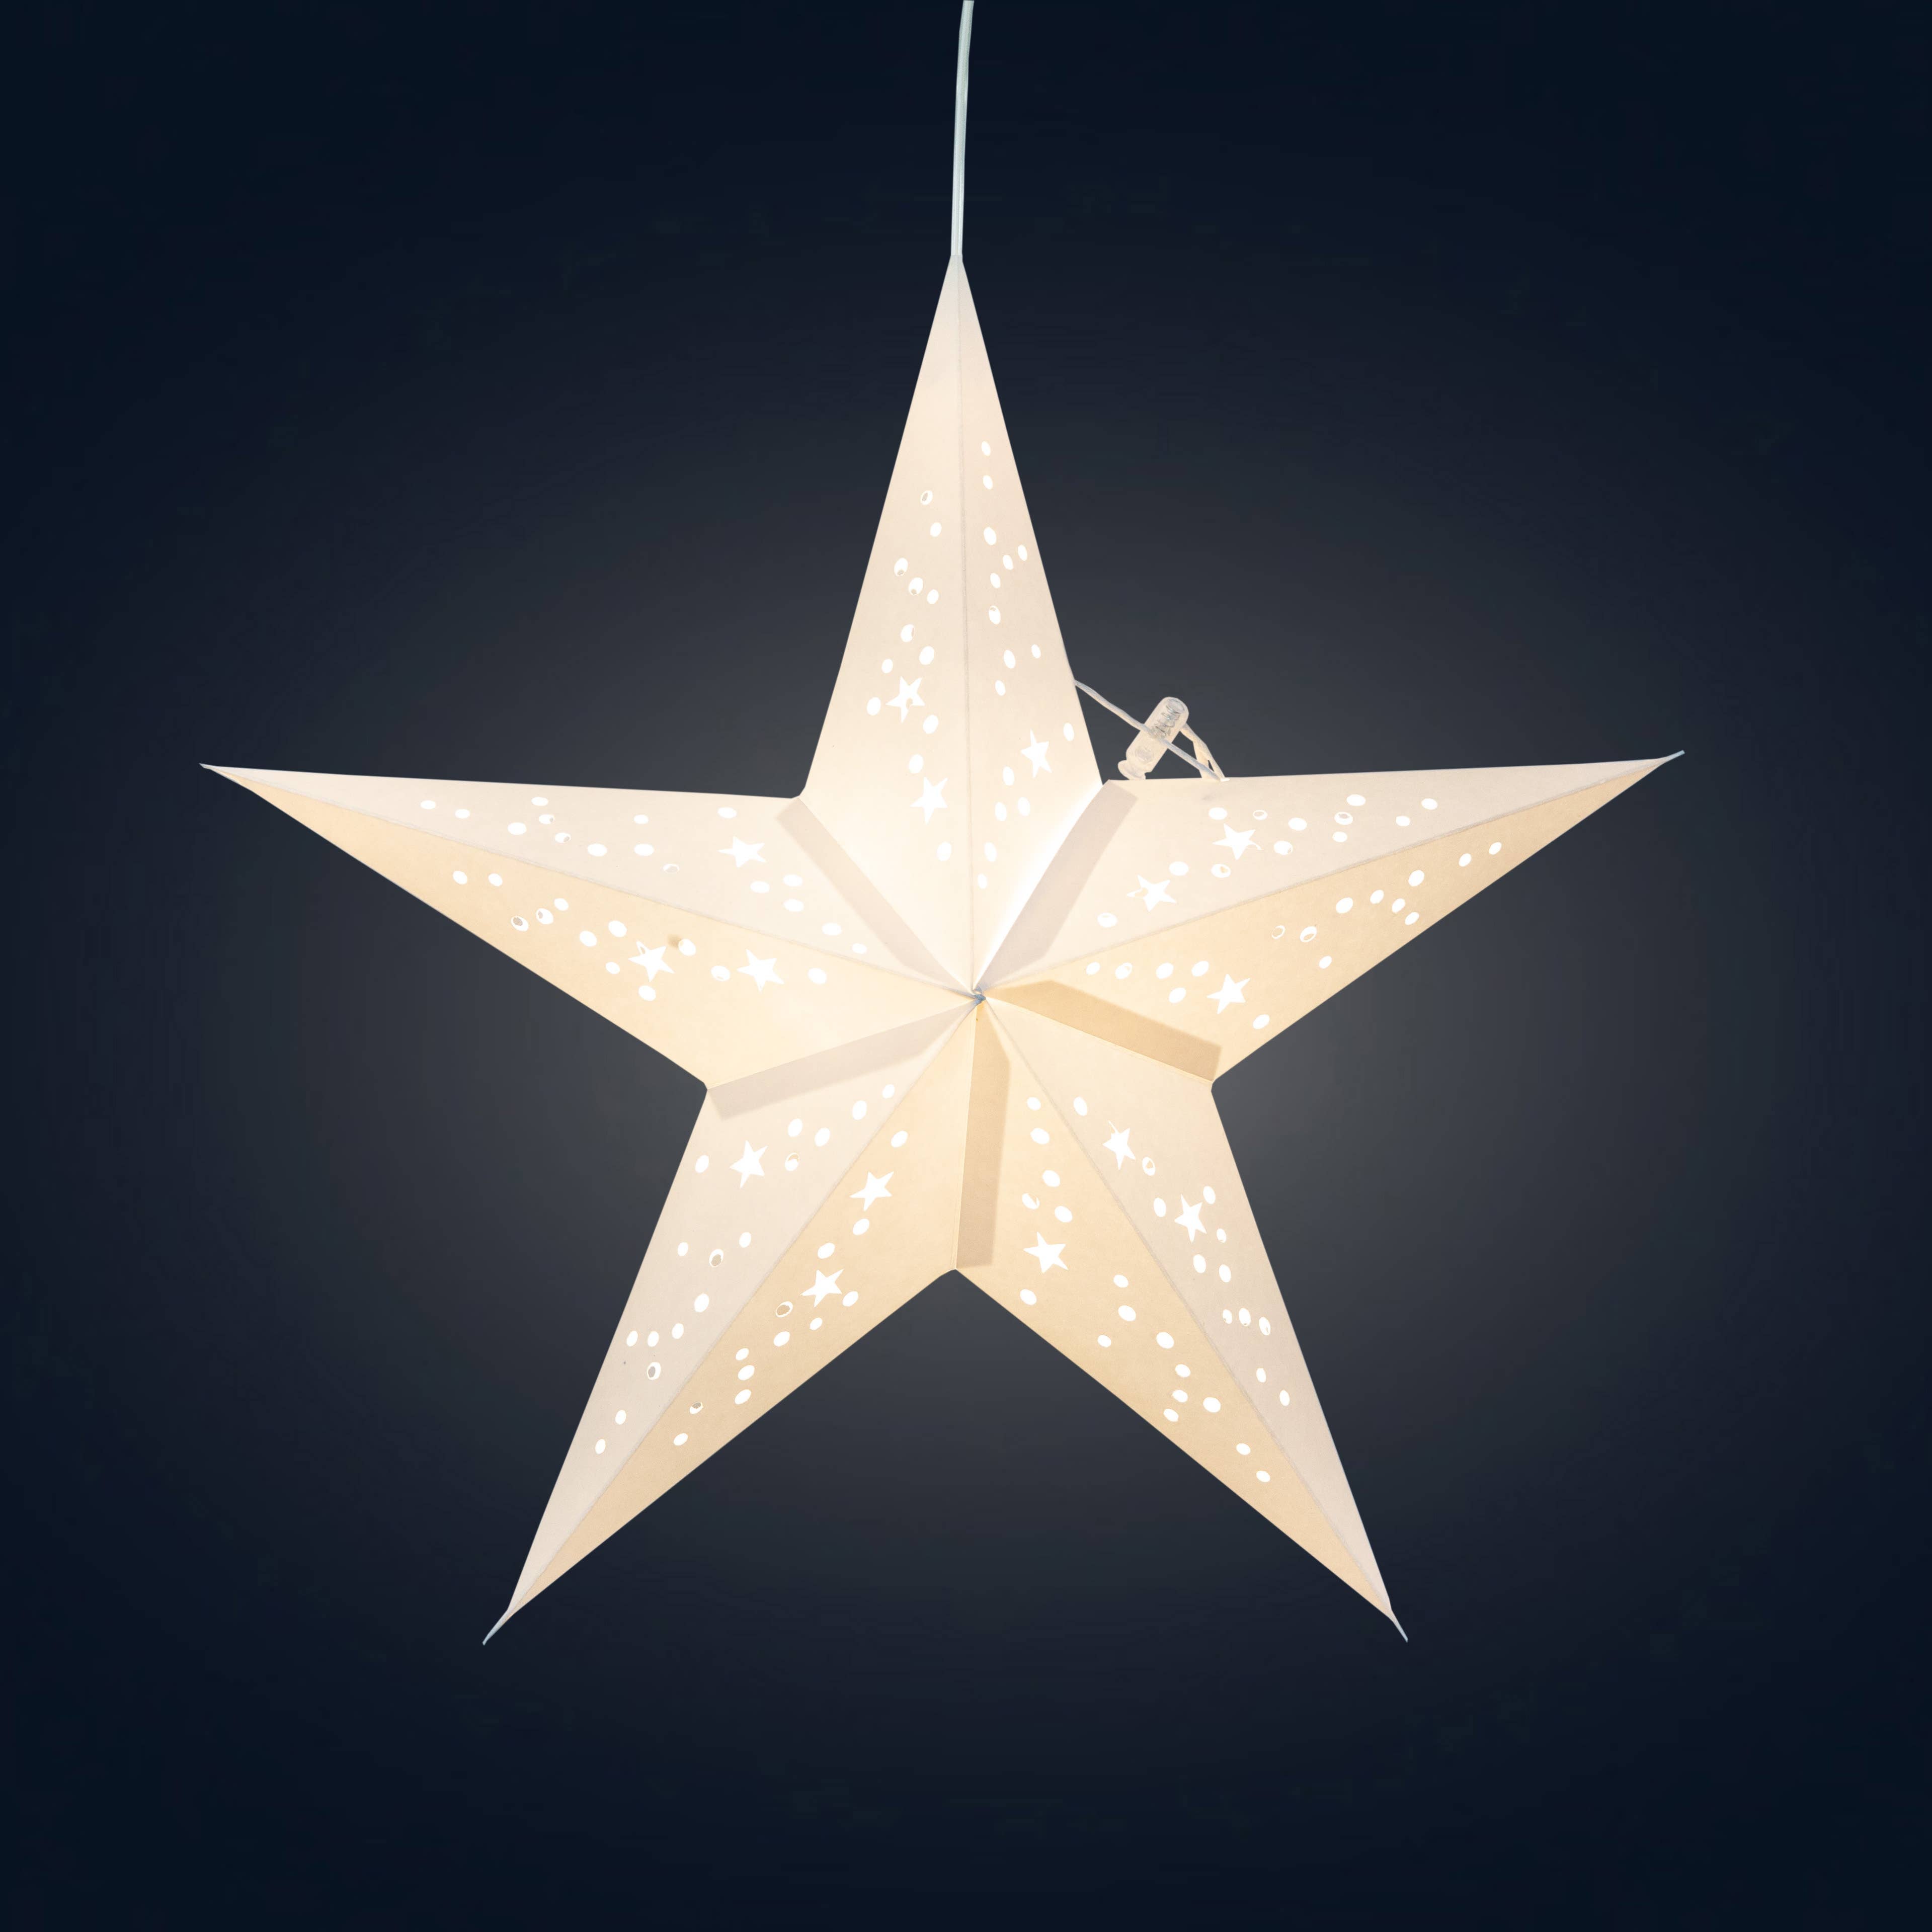 Twinkle Star 15, White Paper Star Lantern Light (provides 10